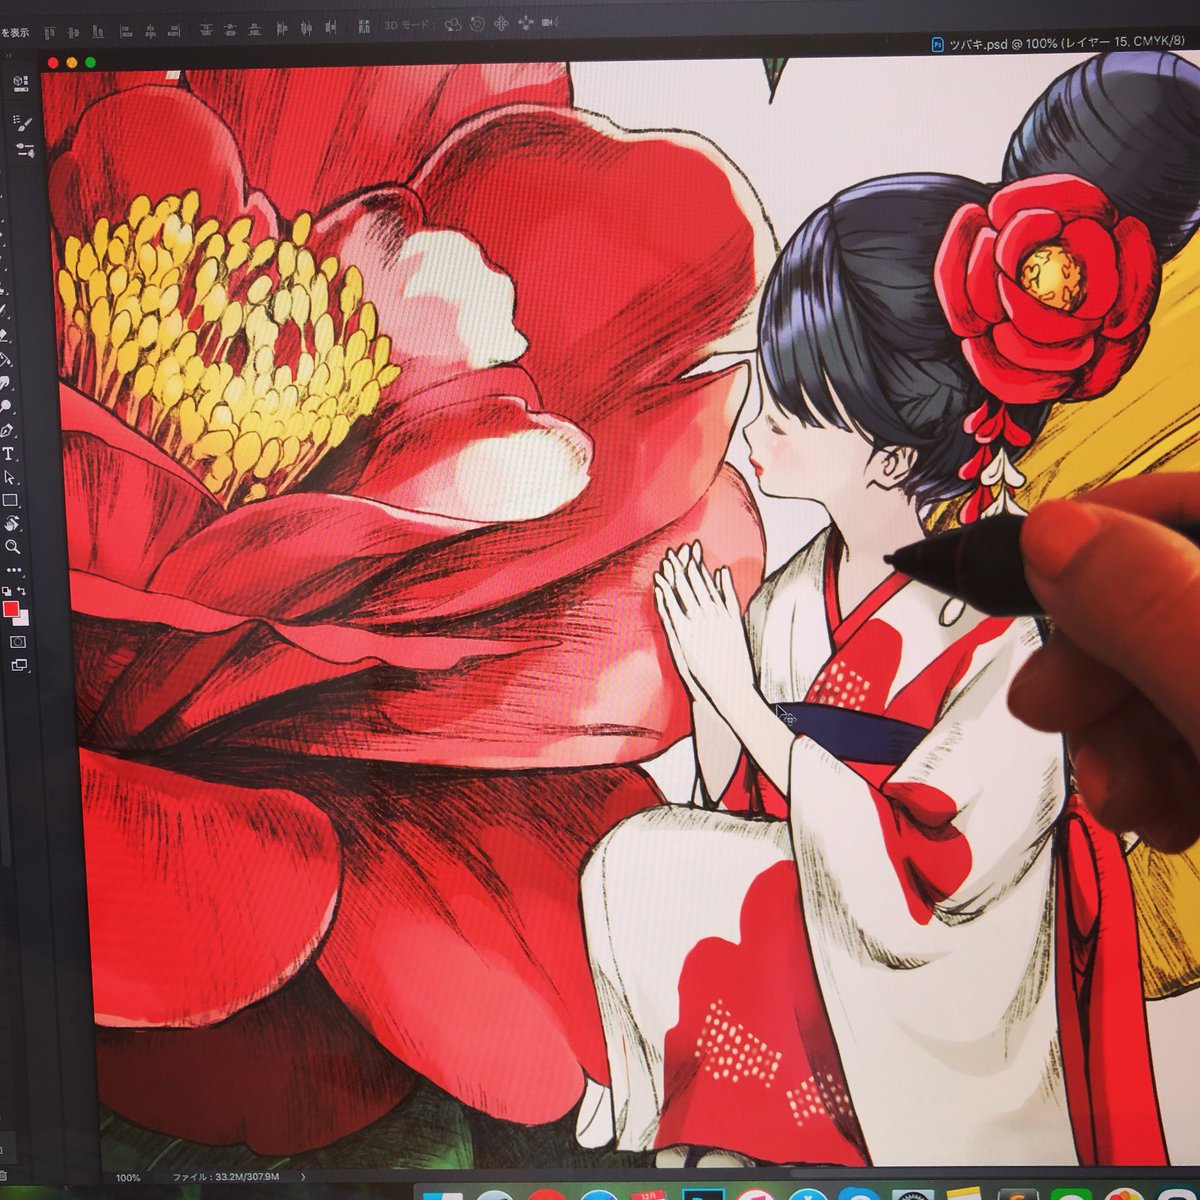 ほしのいつき Itsuki 最近は花 そこに宿る妖精シリーズを描いてます 赤ってすごいキレイ Illustration Fairy Flower イラスト 制作途中 妖精 椿